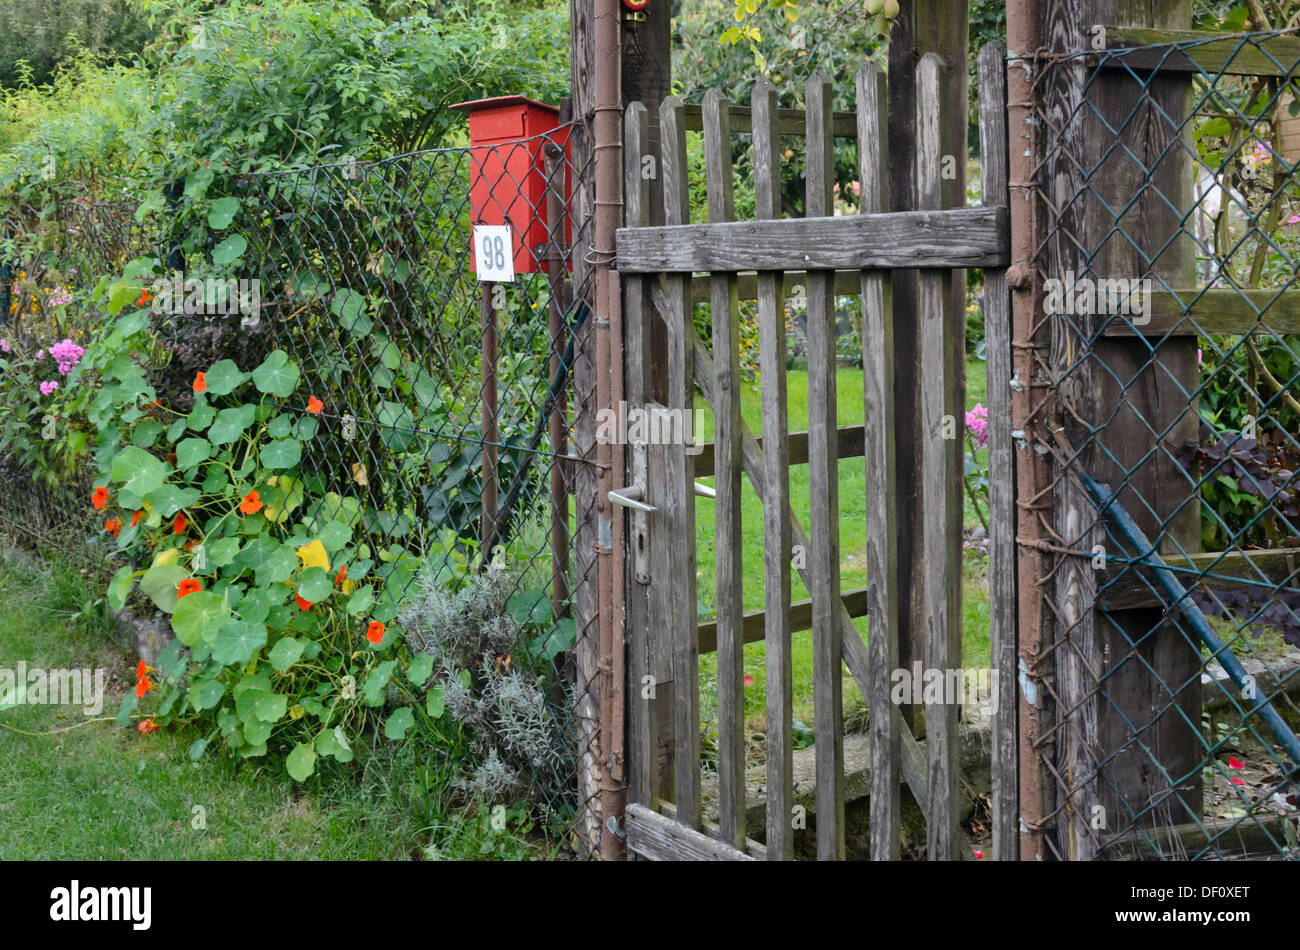 Wooden garden gate of an allotment garden Stock Photo